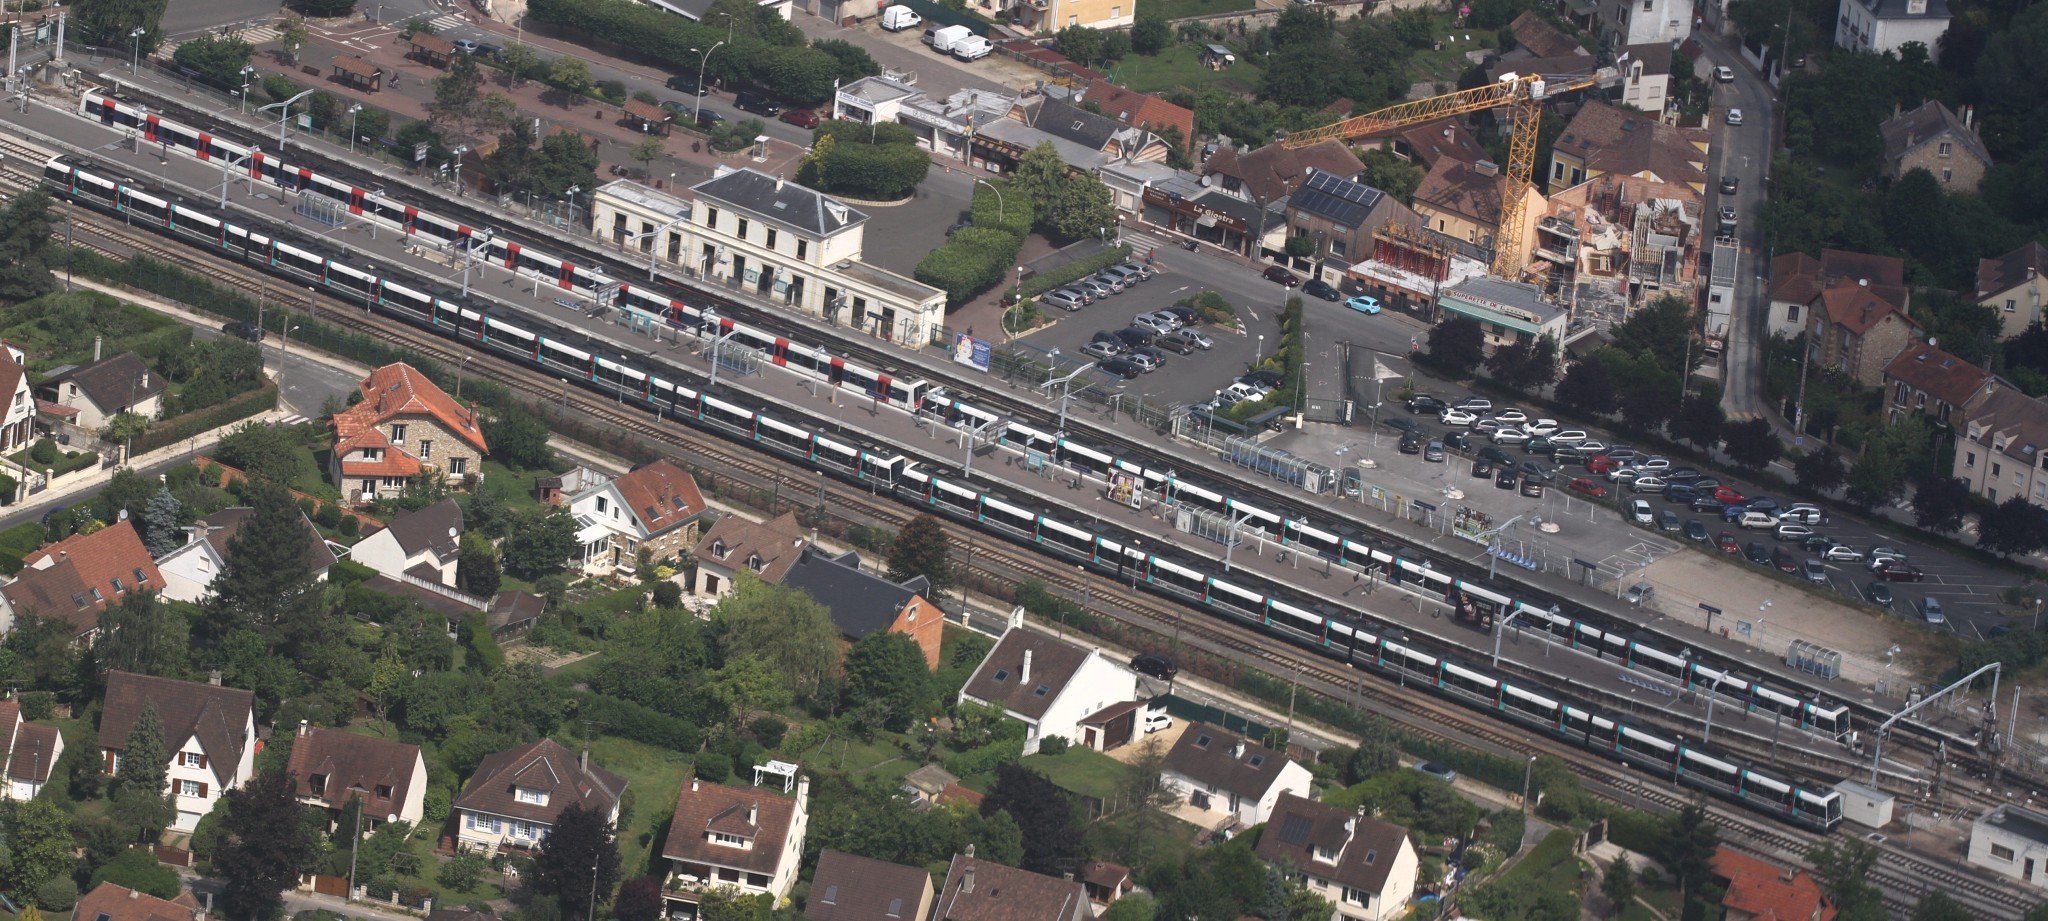 Un bâtiment de gare blanc assez classique pour une gare RER, le long de voies de chemin de fer qui traversent la photo en diagonale.